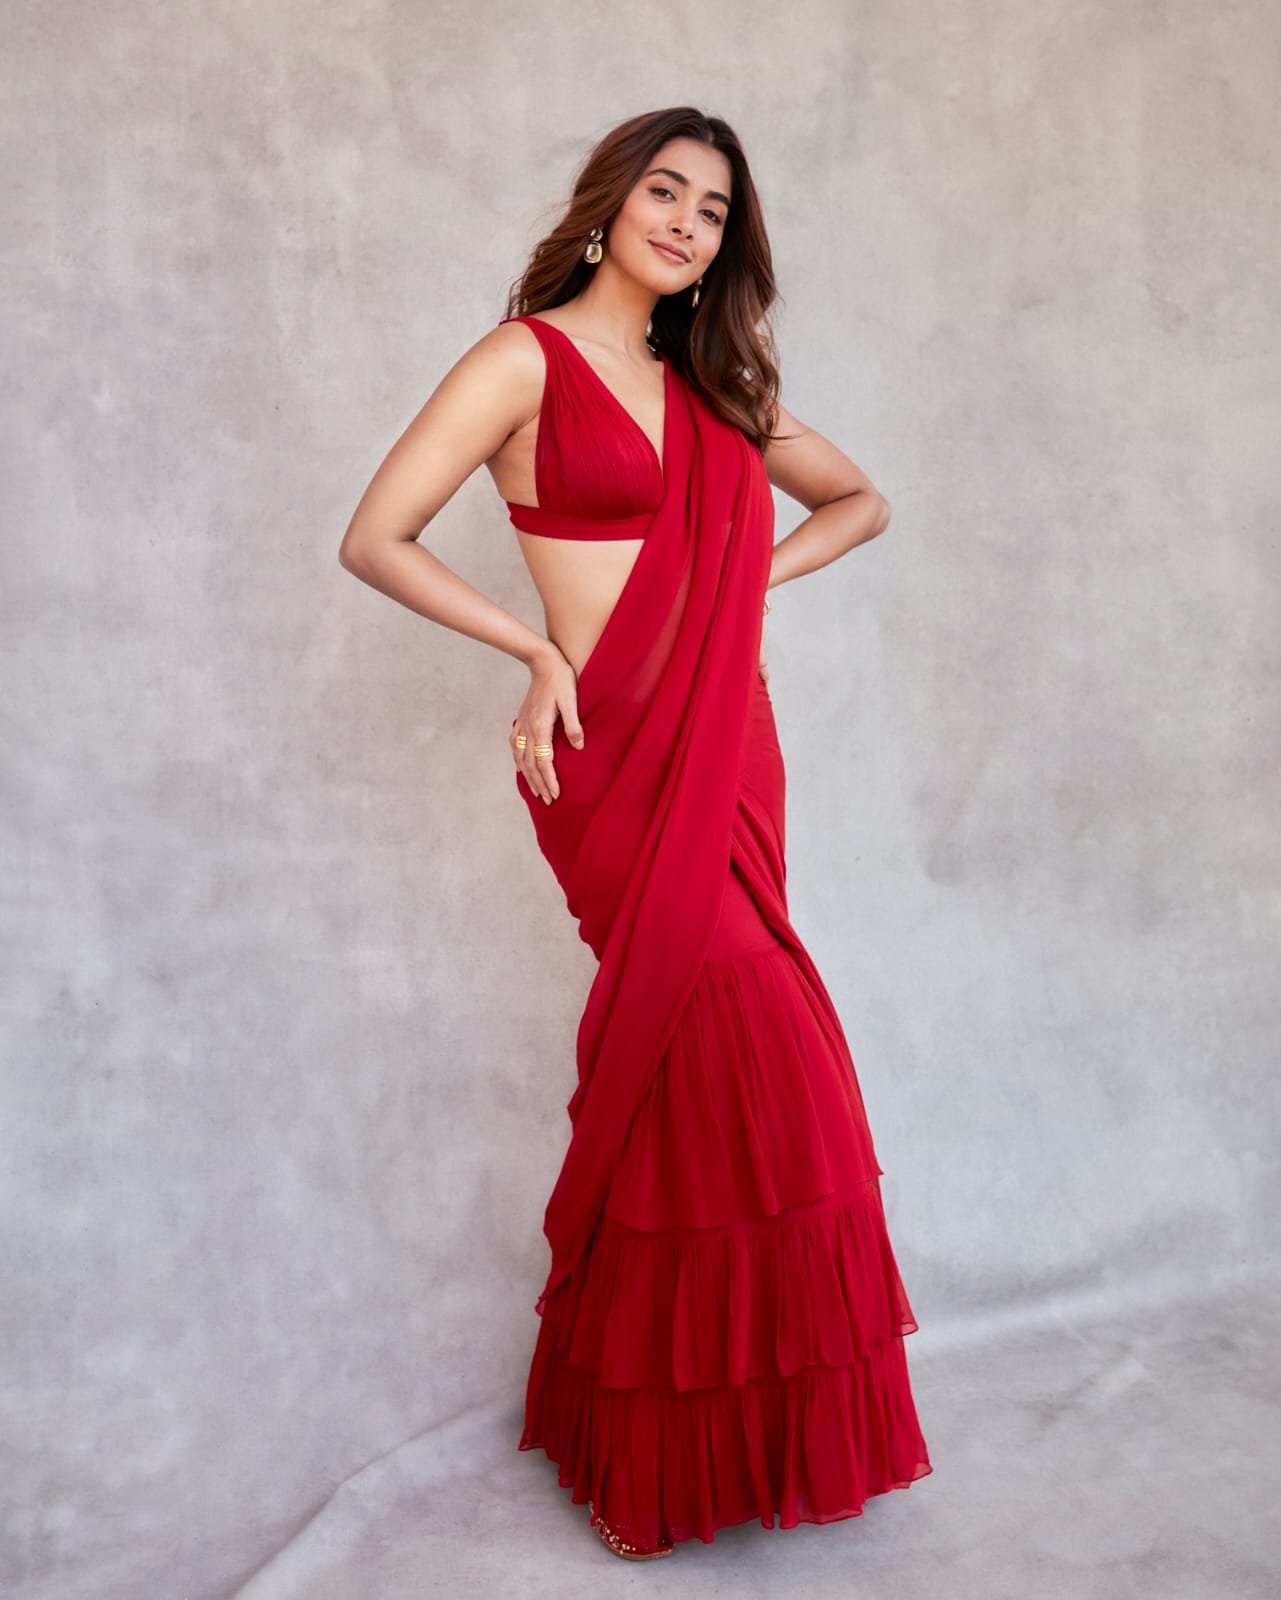 Pic Talk: Pooja Looks Sensational In Ravishing Red Saree